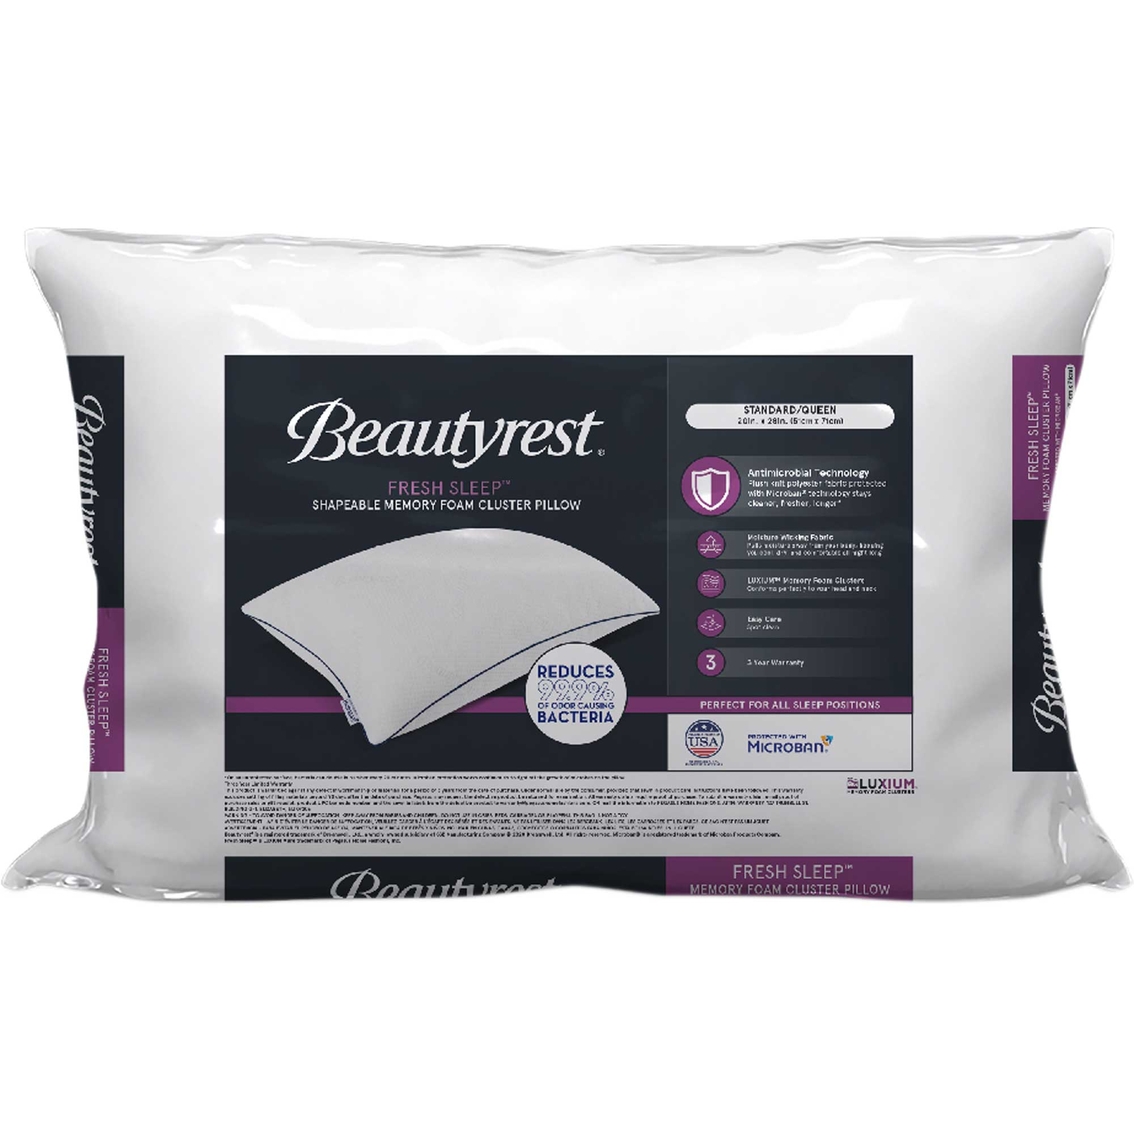 Beautyrest Fresh Sleep Memory Foam Cluster Pillow | Bed Pillows ...